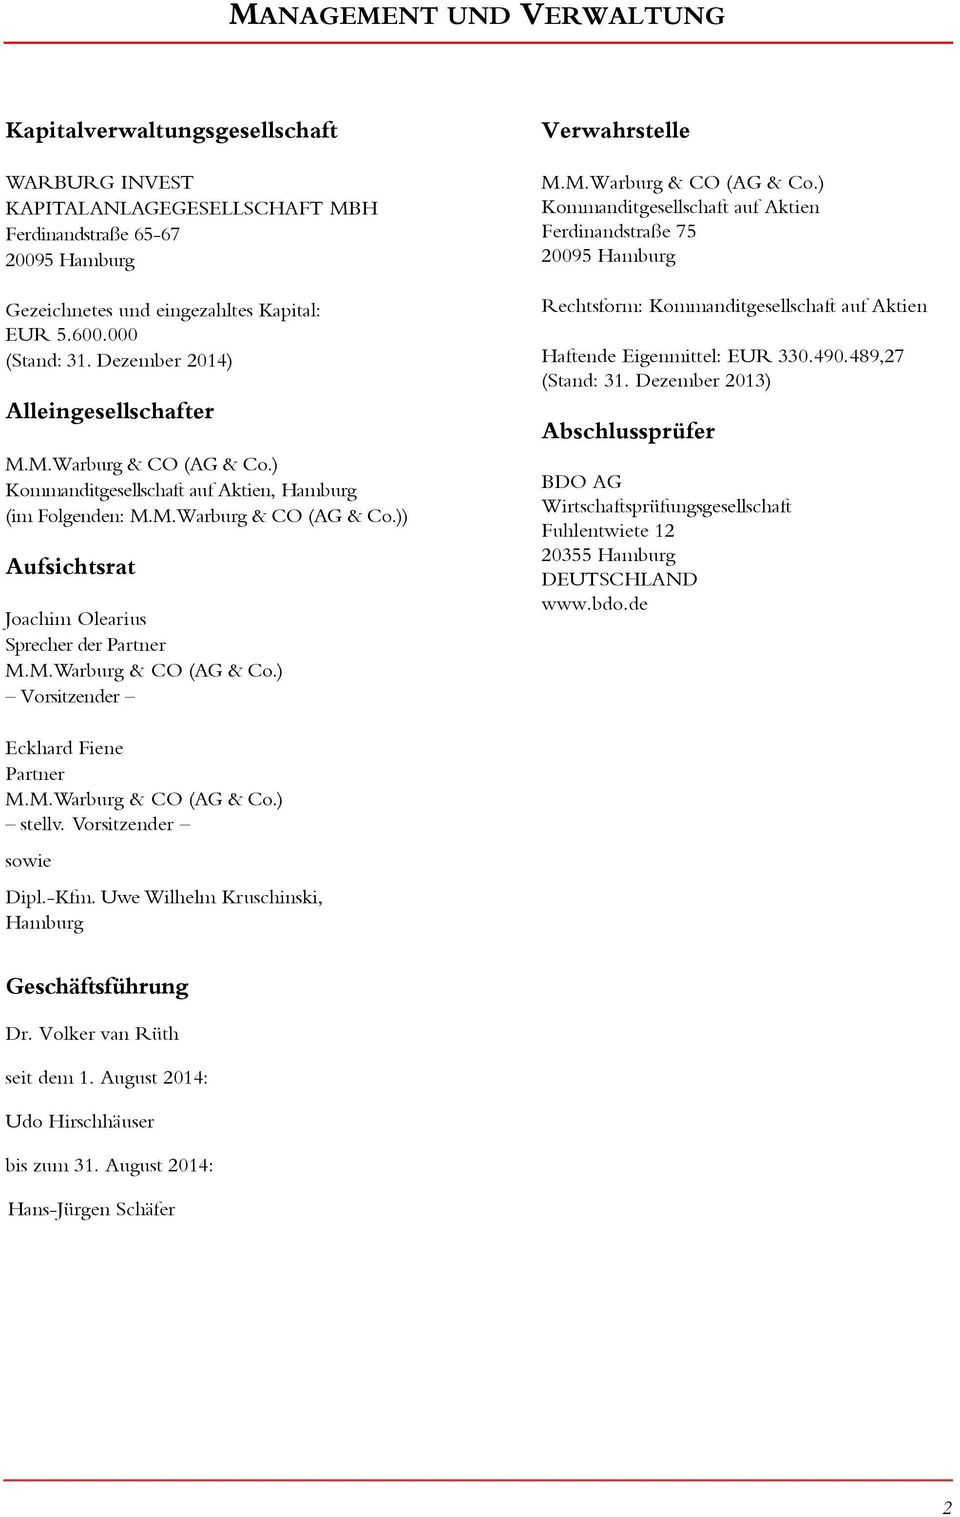 M.Warburg & CO (AG & Co.) Vorsitzender Verwahrstelle M.M.Warburg & CO (AG & Co.) Kommanditgesellschaft auf Aktien Ferdinandstraße 75 295 Hamburg Rechtsform: Kommanditgesellschaft auf Aktien Haftende Eigenmittel: 33.